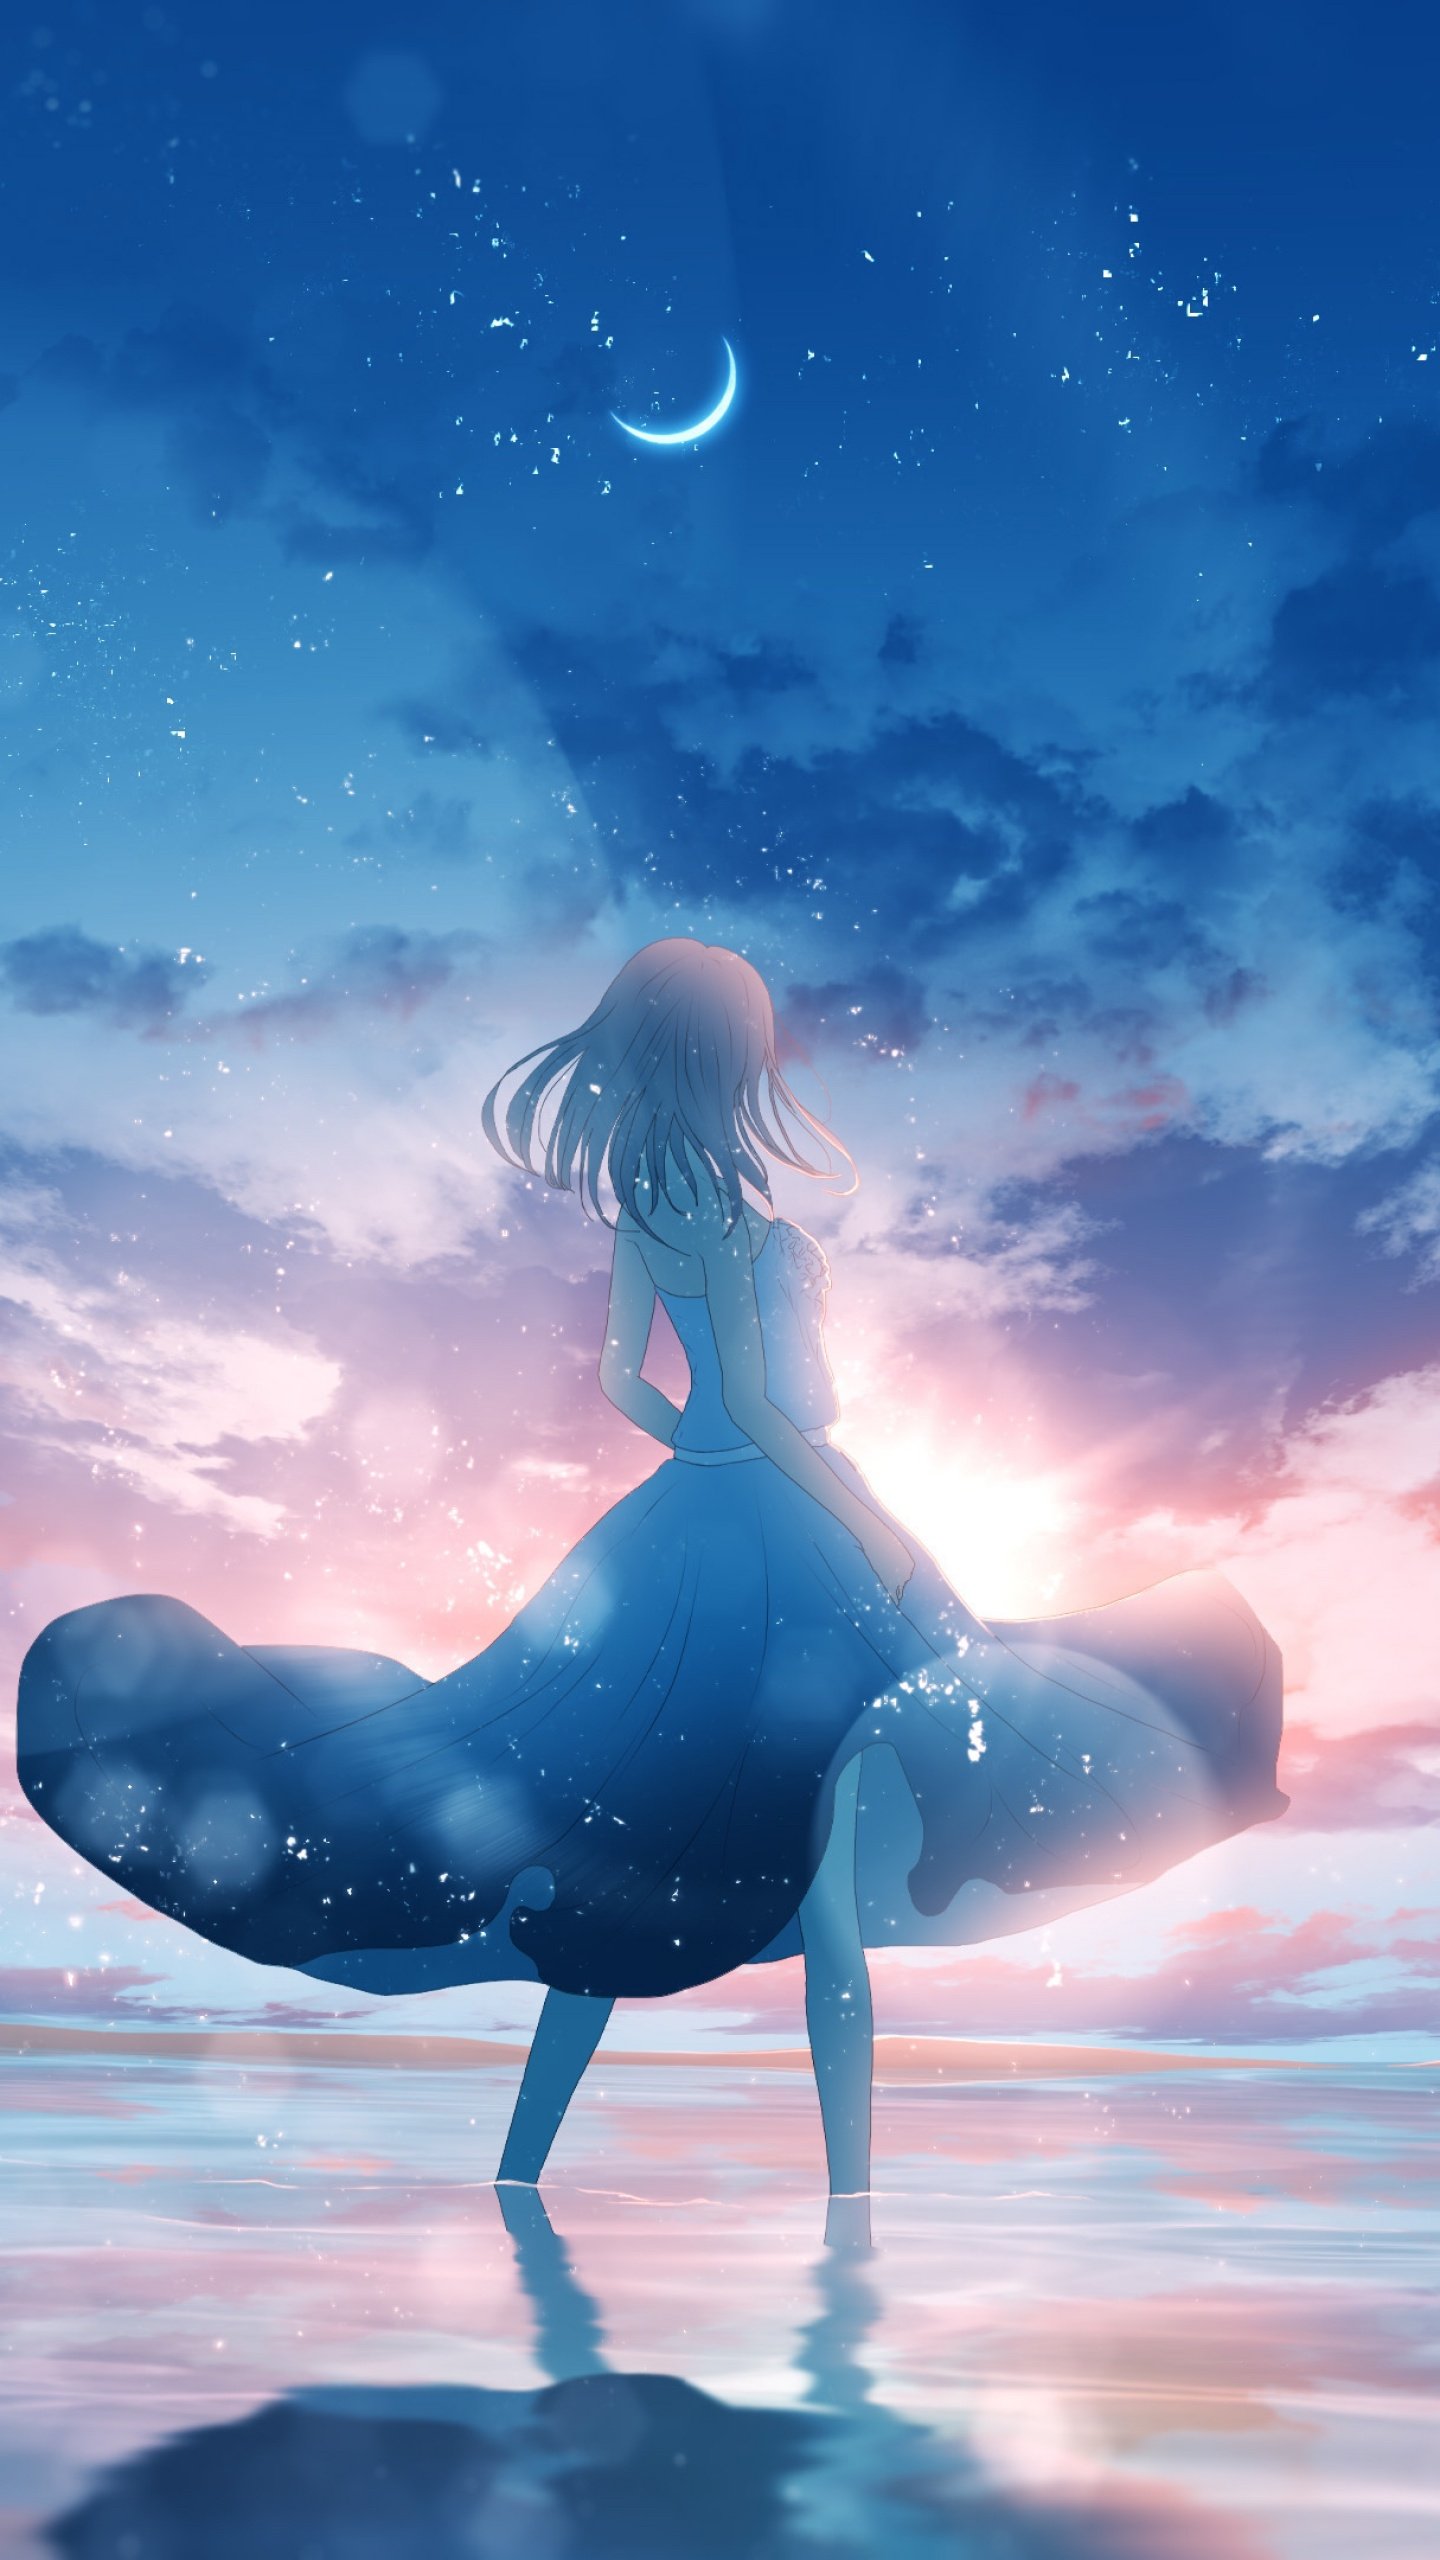 Anime girl Wallpaper 4K, Dream, Happy girl, Moon, Fantasy